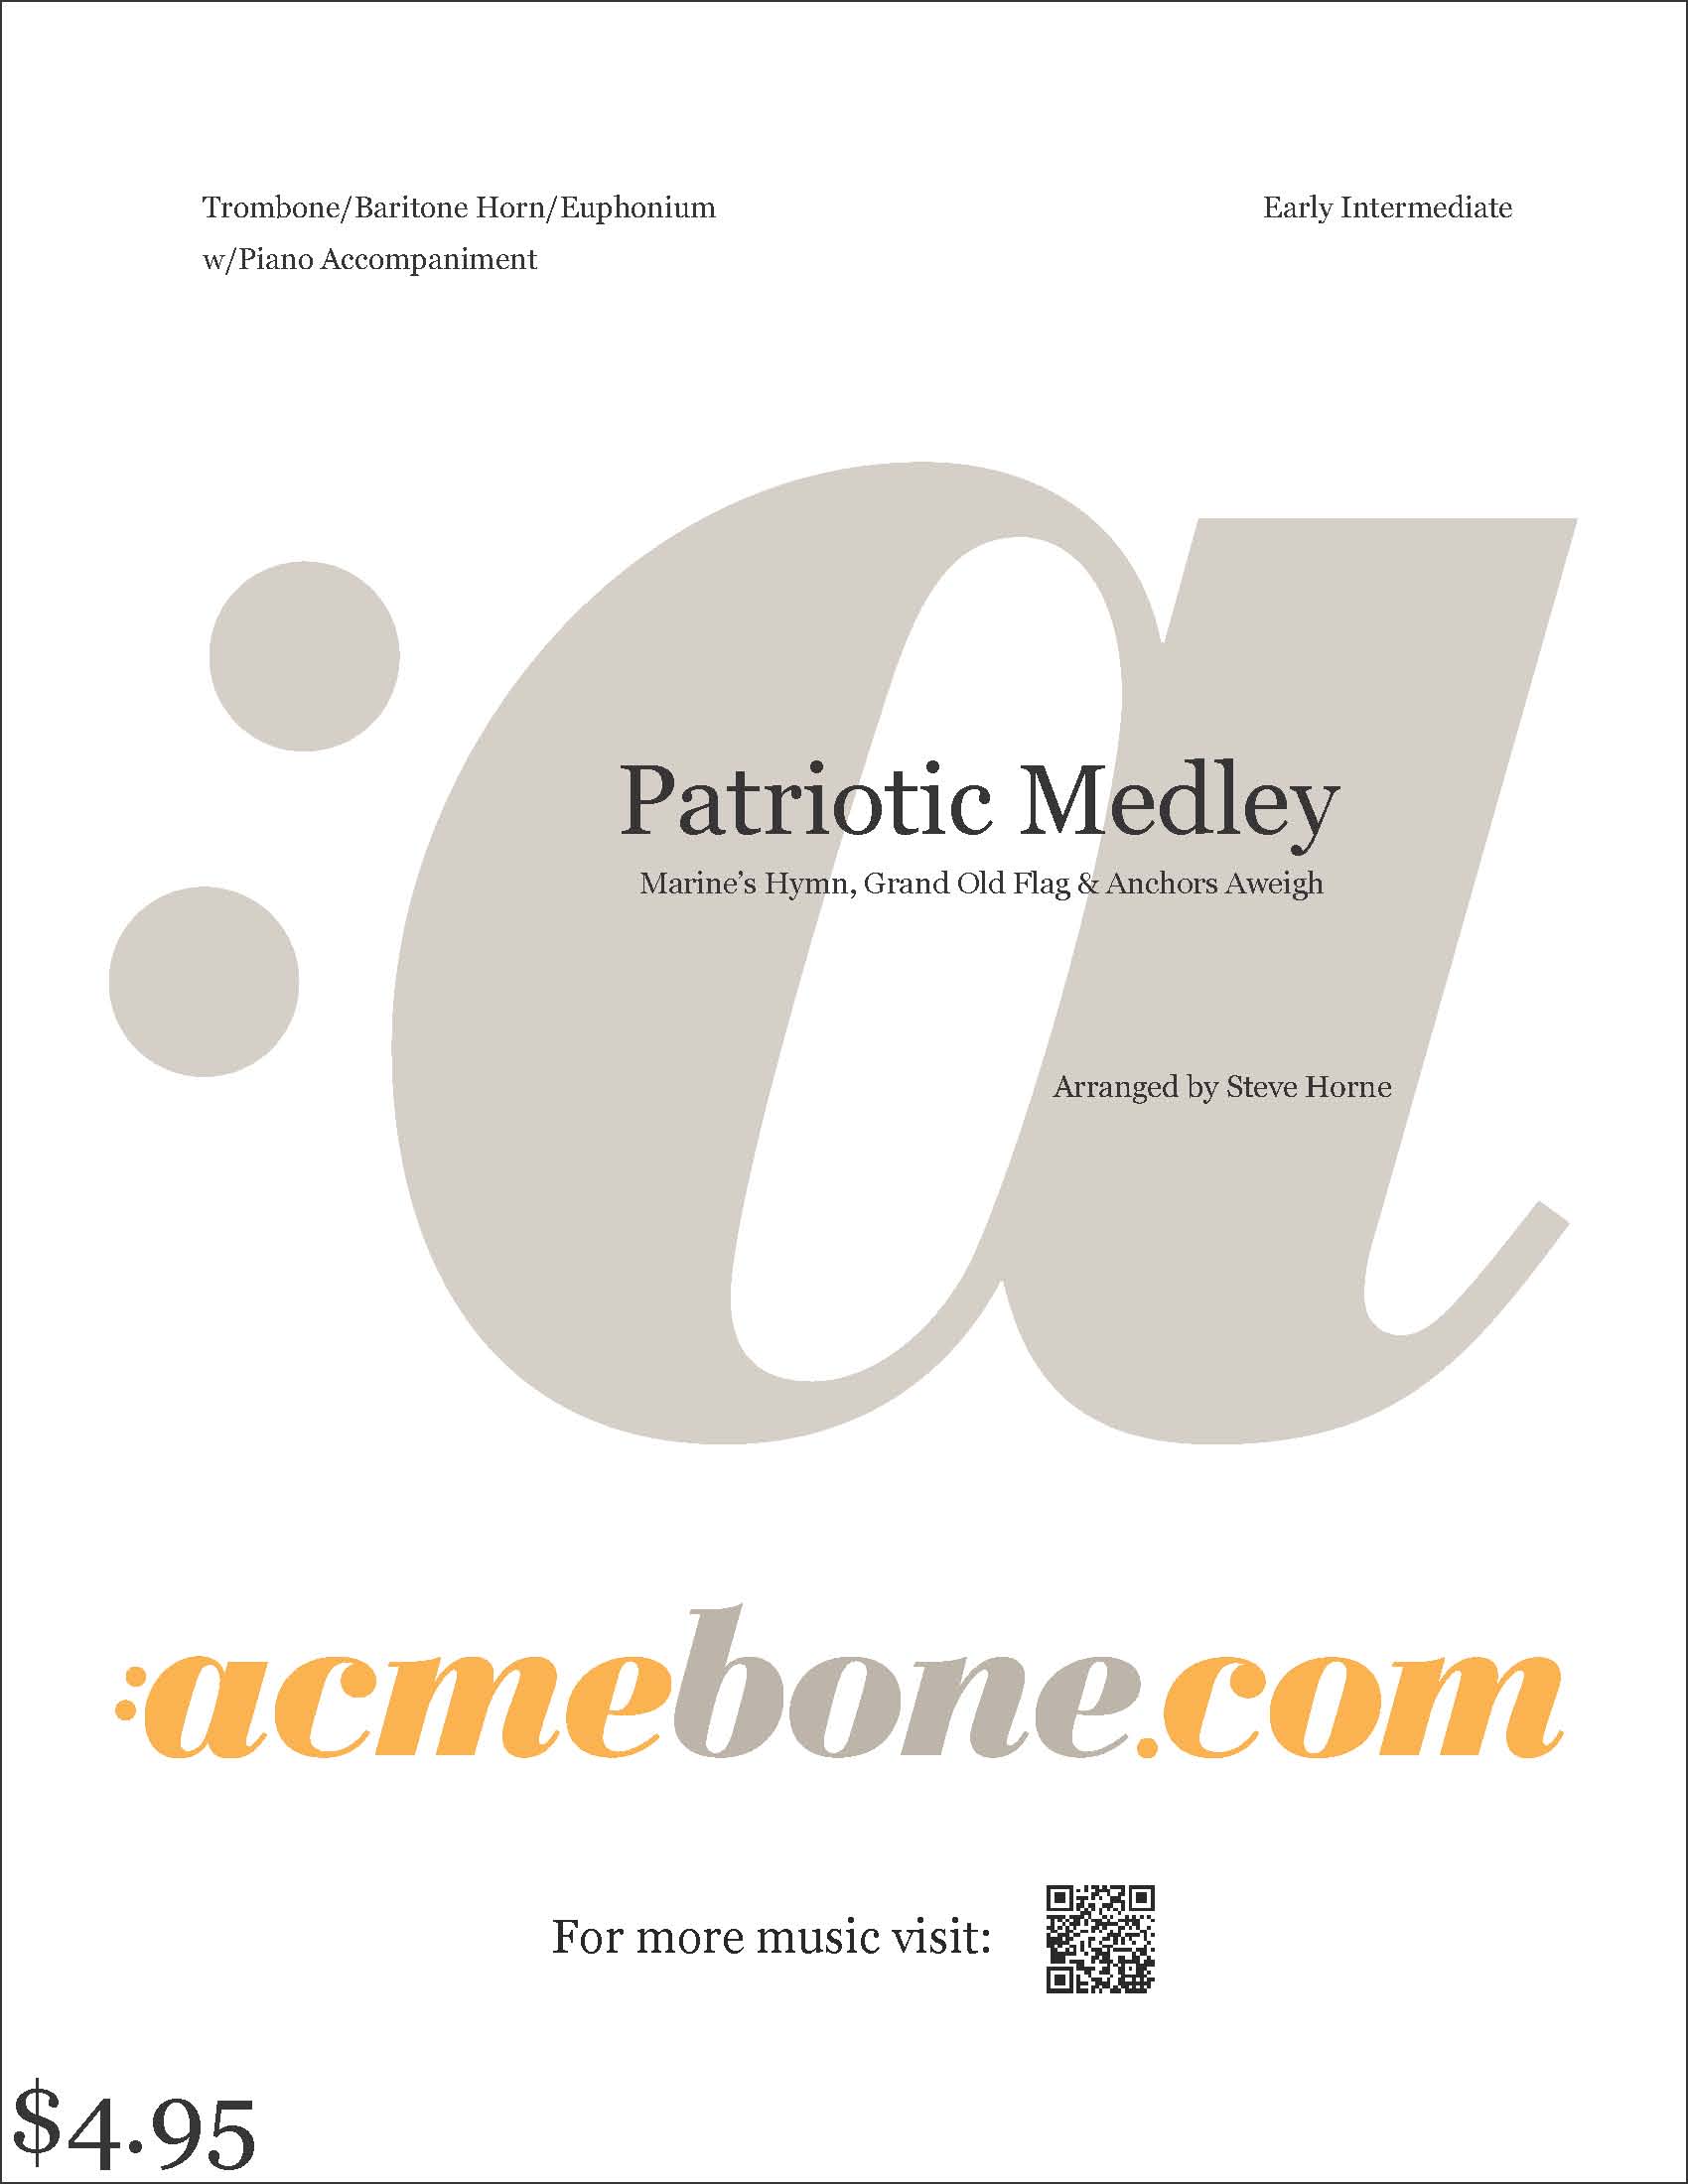 Patriotic Medley_digital_cover_w-bo_price.jpg